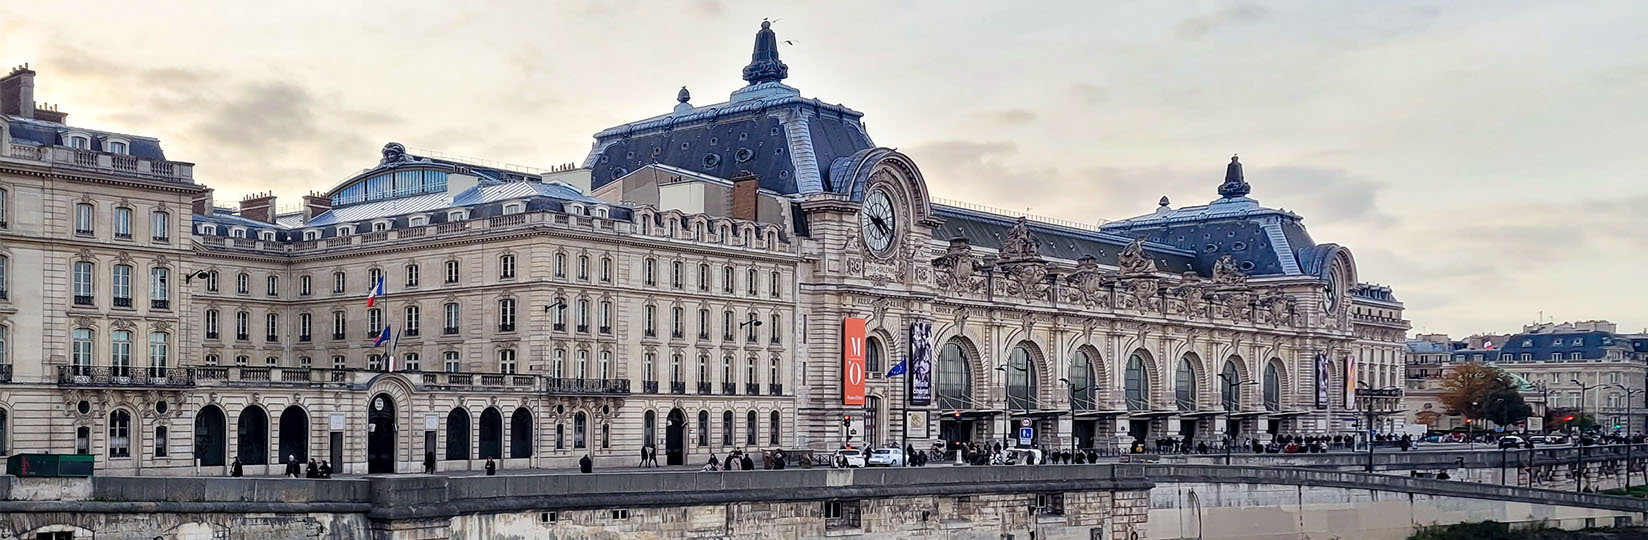 Musée d'Orsay.jpg